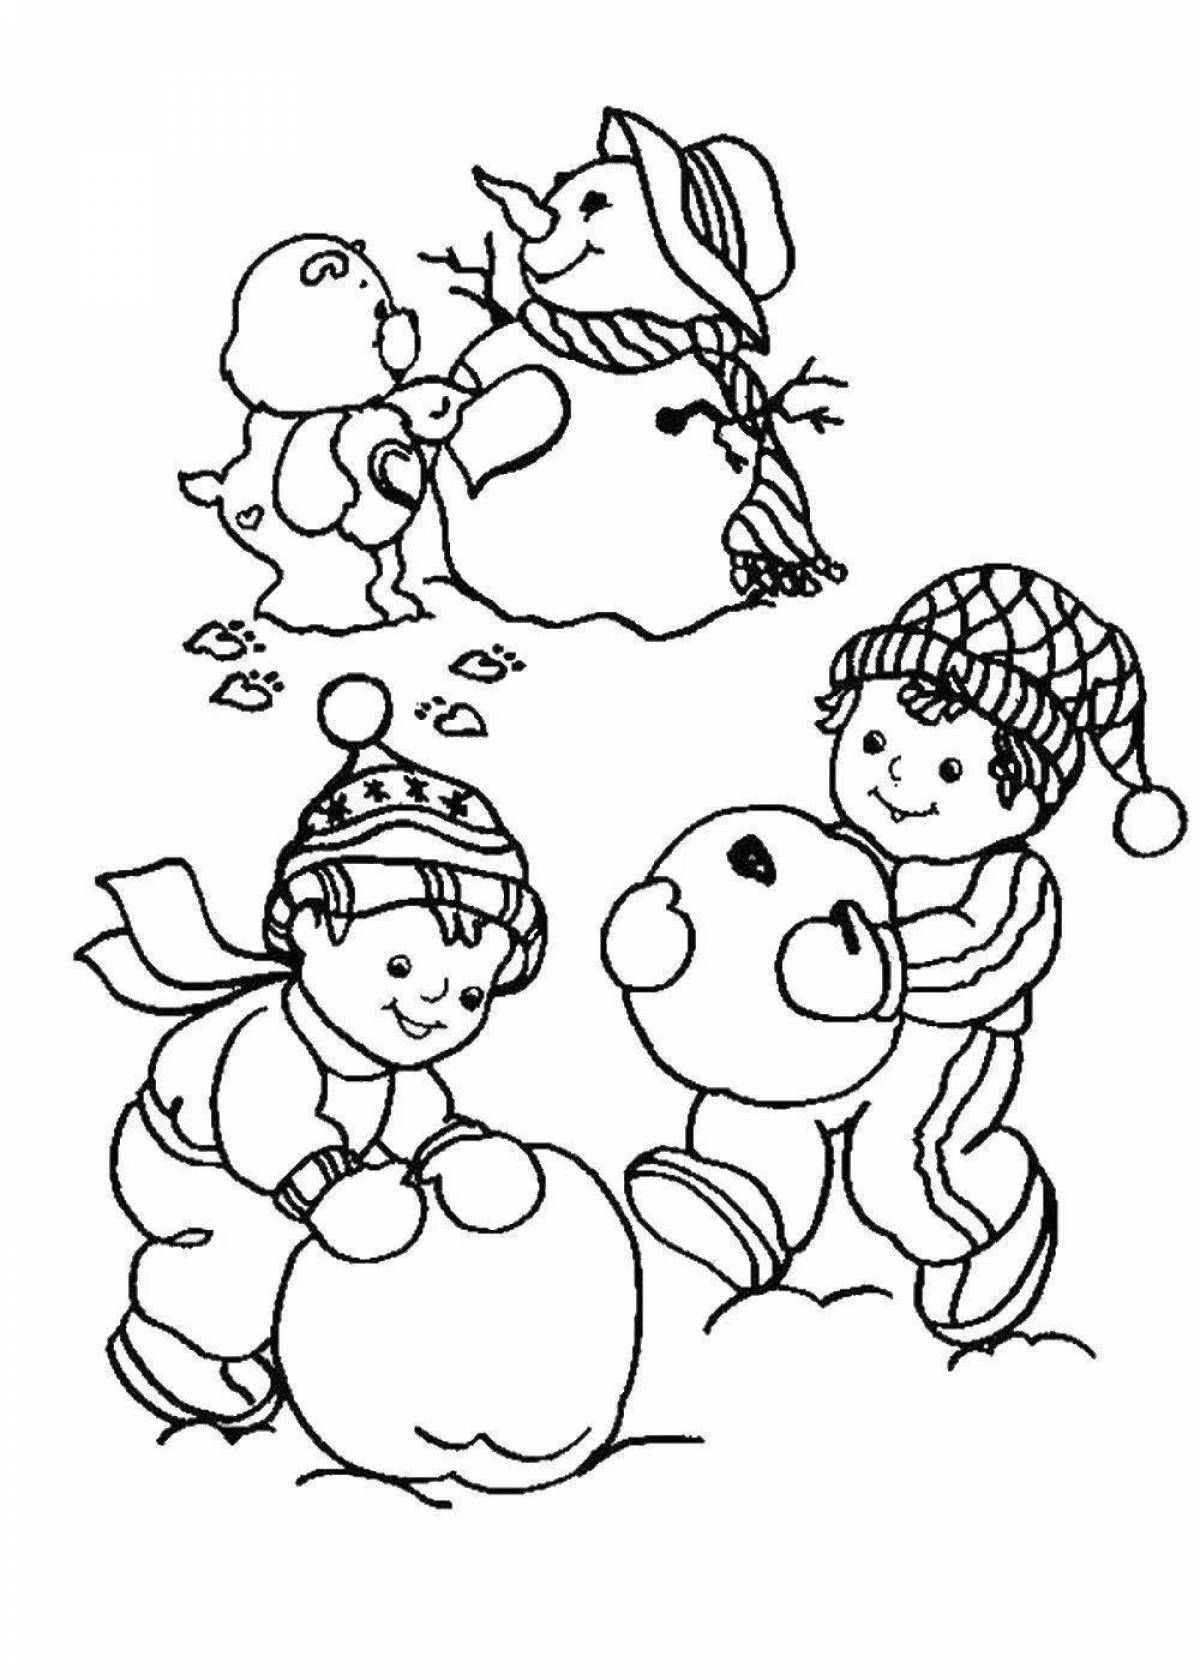 Раскраска снежок с цветными брызгами для детей